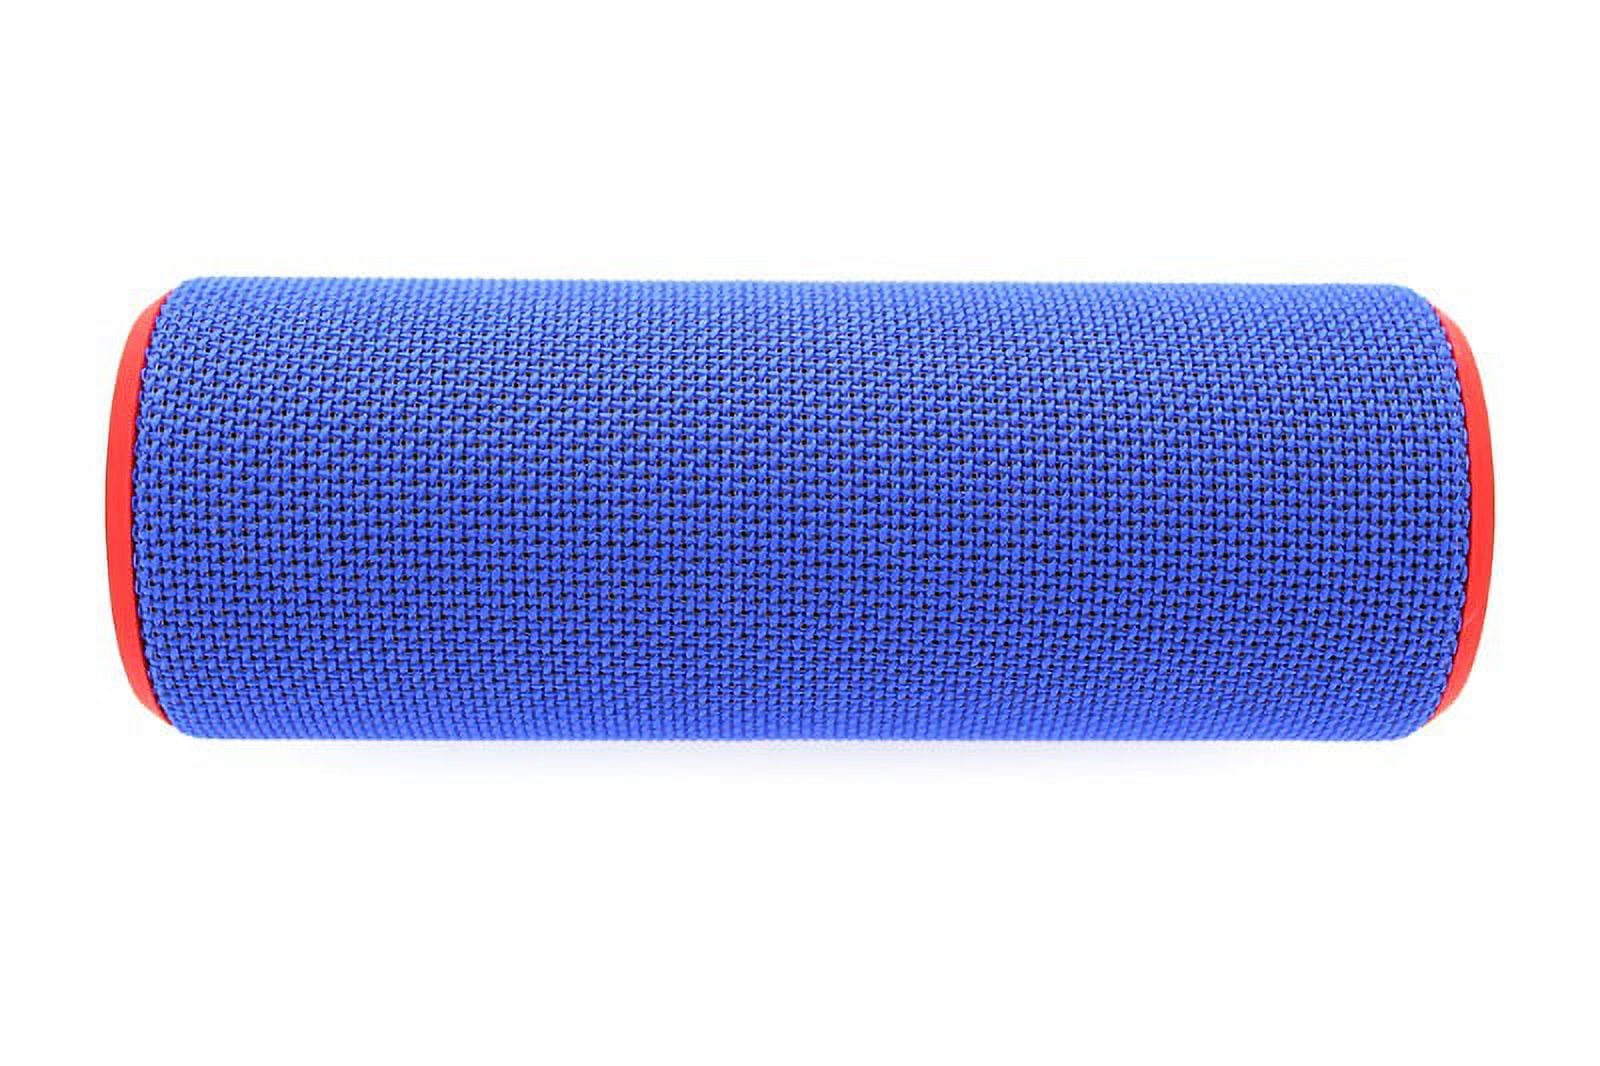 Logitech Ultimate Ears BOOM Speaker, Steel Blue - image 5 of 6